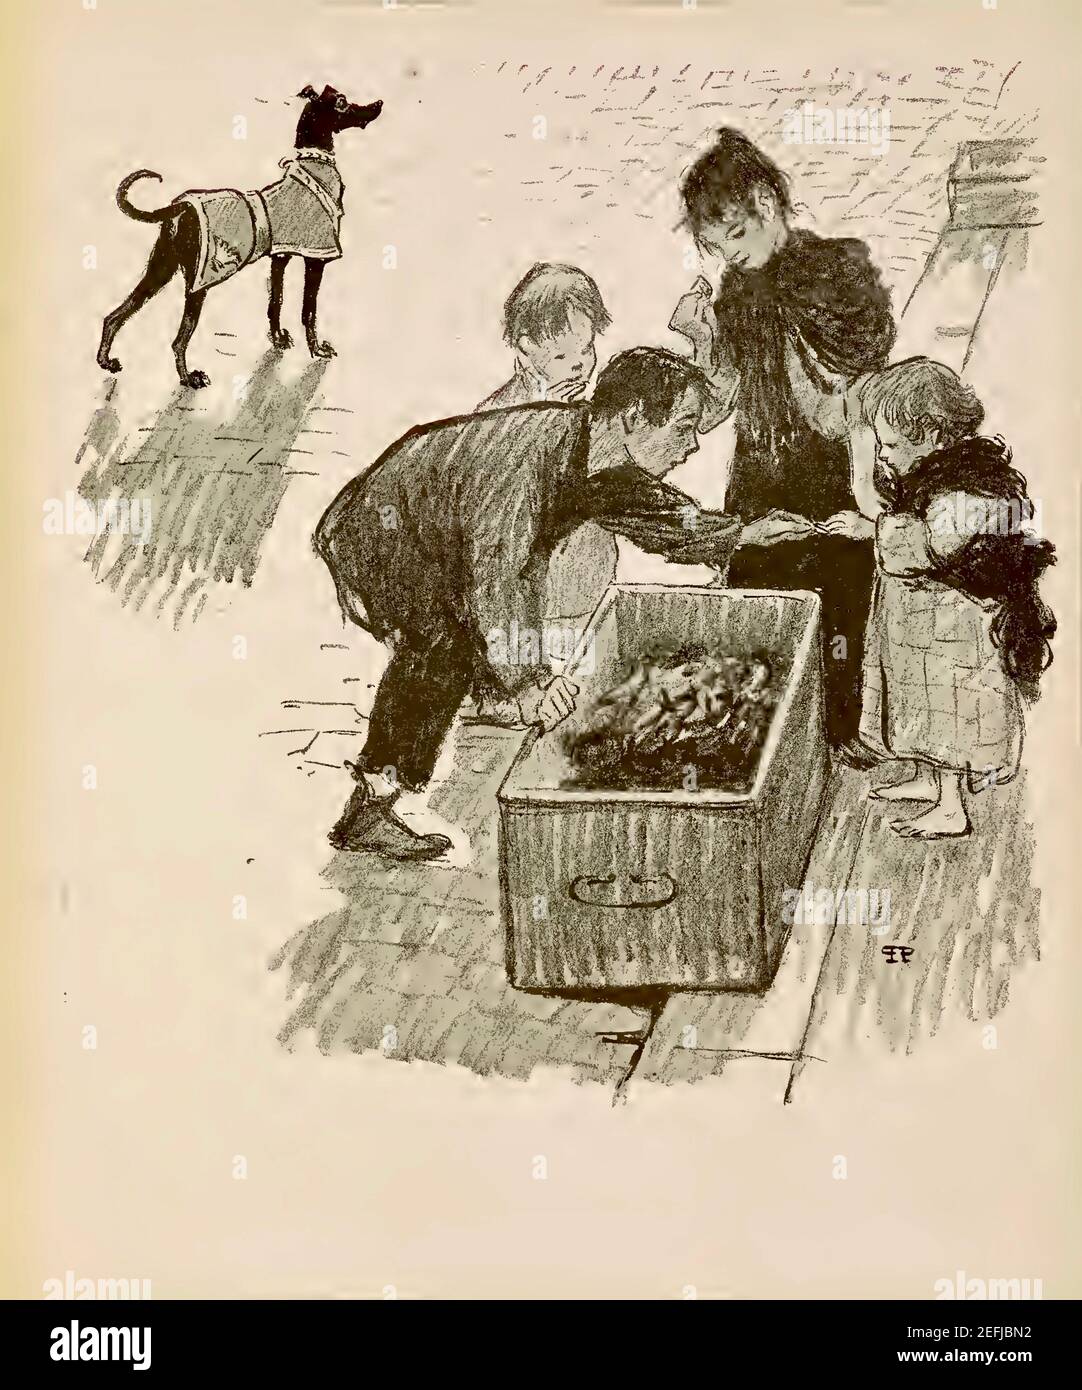 Les enfants et le chien riche de l'homme met en évidence le golfe entre riches et pauvres dans cette remarquable œuvre de Theophile Steinlen. Banque D'Images